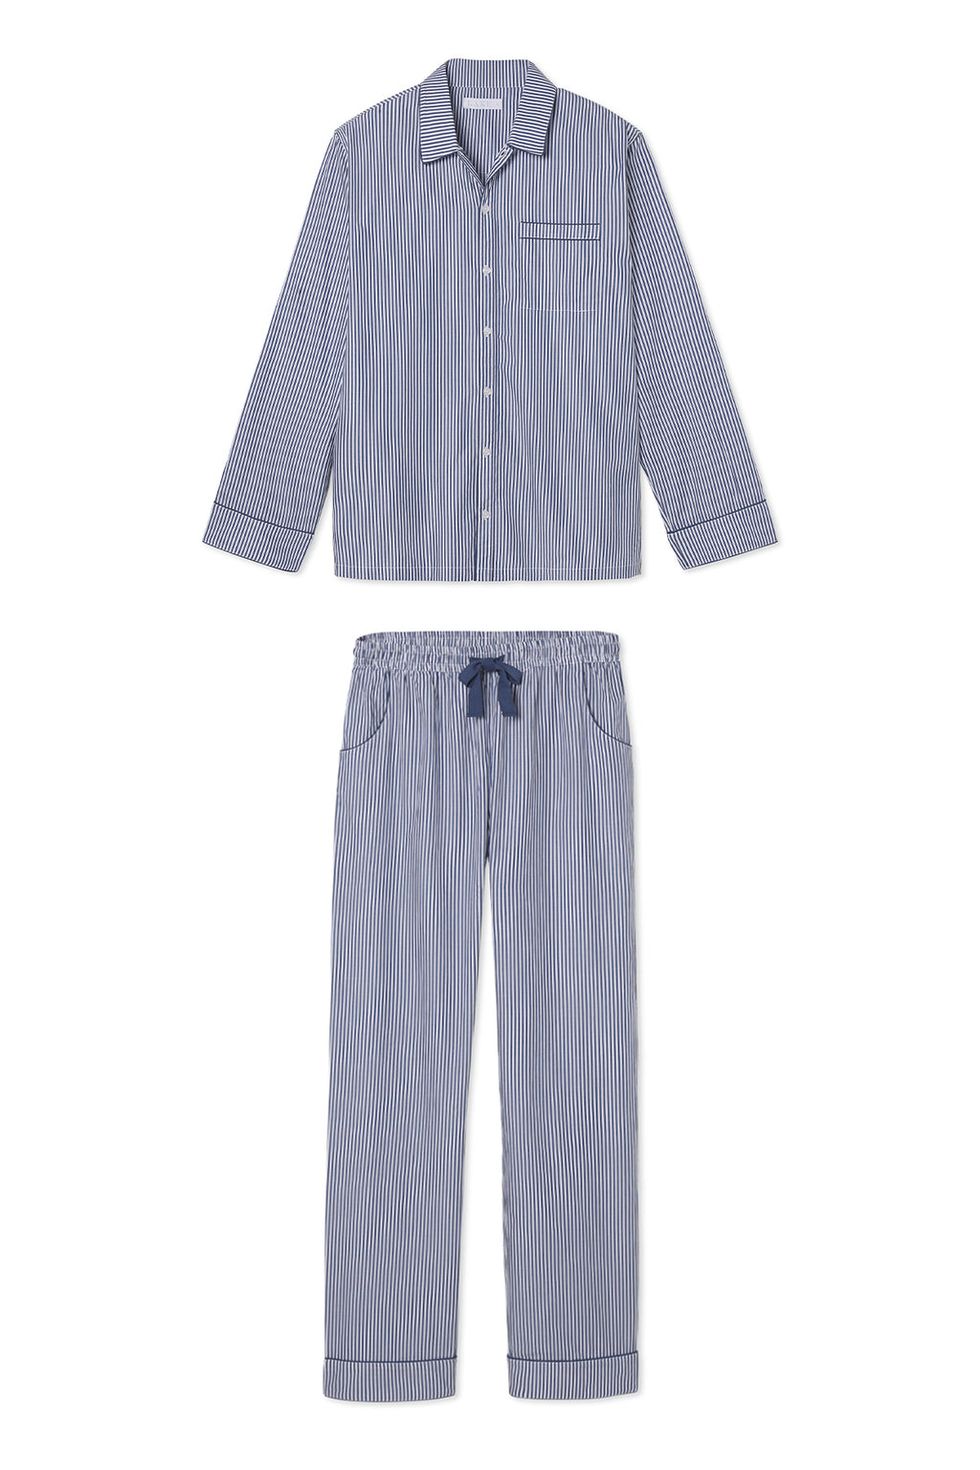 Lake Men's Poplin Pajama Set in Navy Stripe